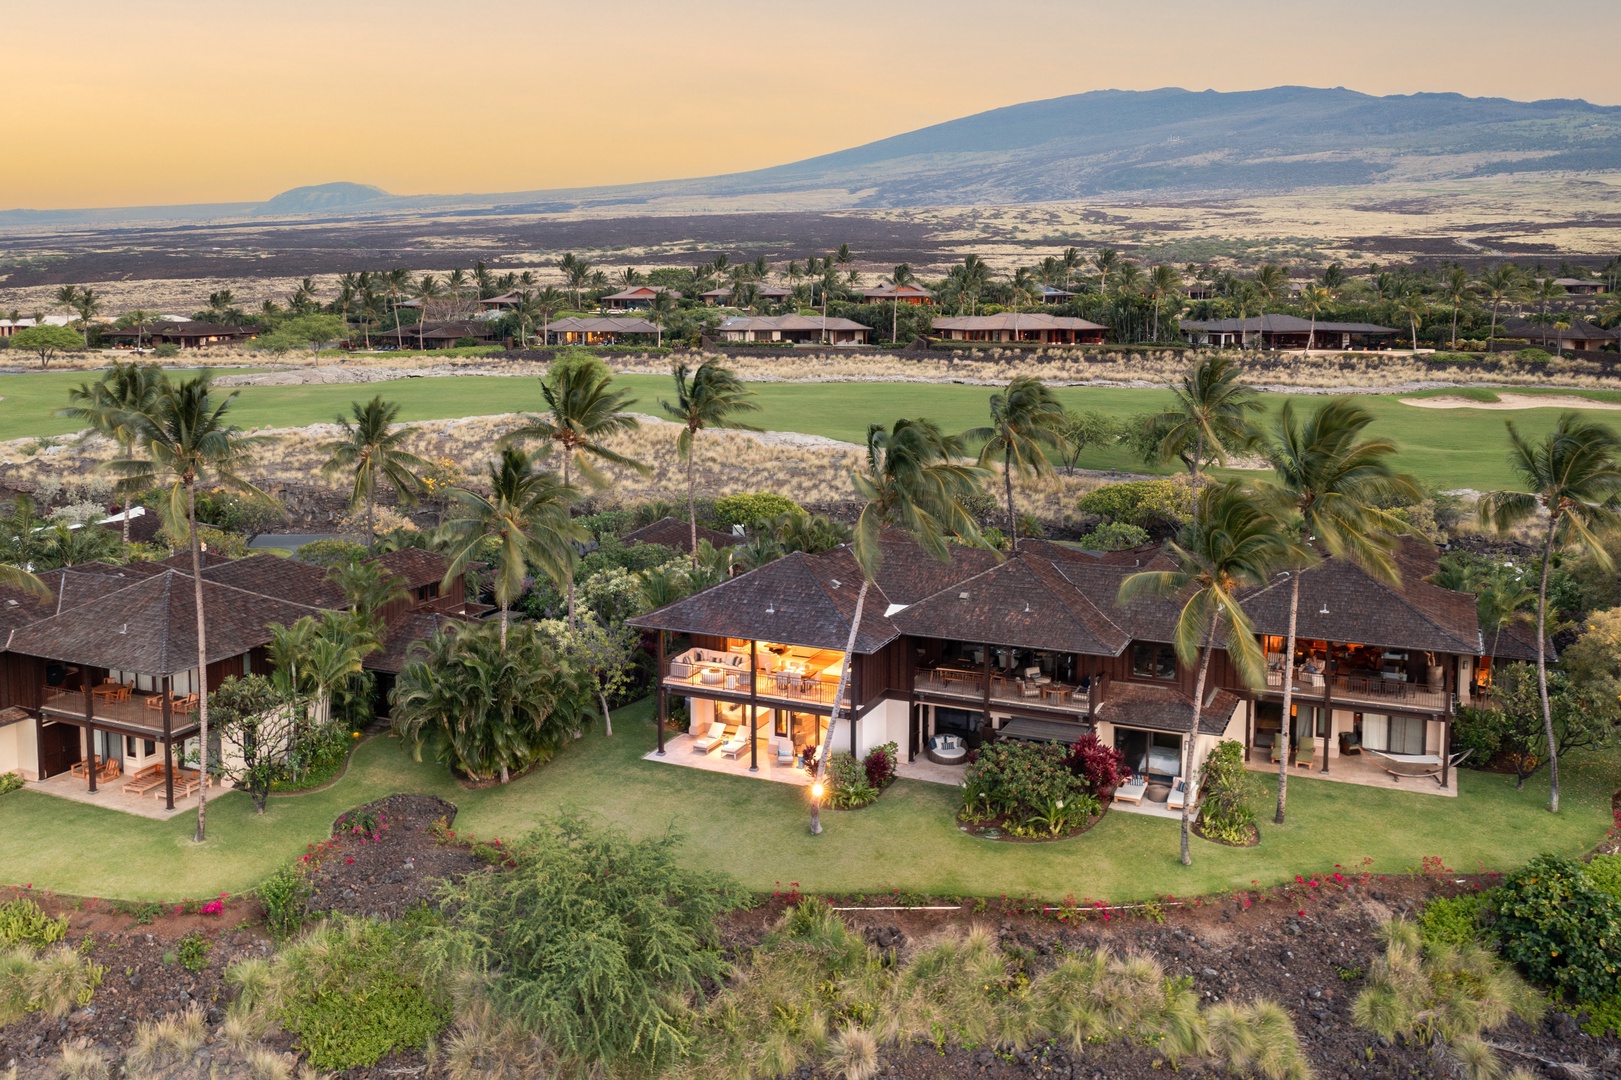 Kailua-Kona Vacation Rentals, 3BD Hali'ipua Villa (120) at Four Seasons Resort at Hualalai - Aerial View of this spectacular tropical villa